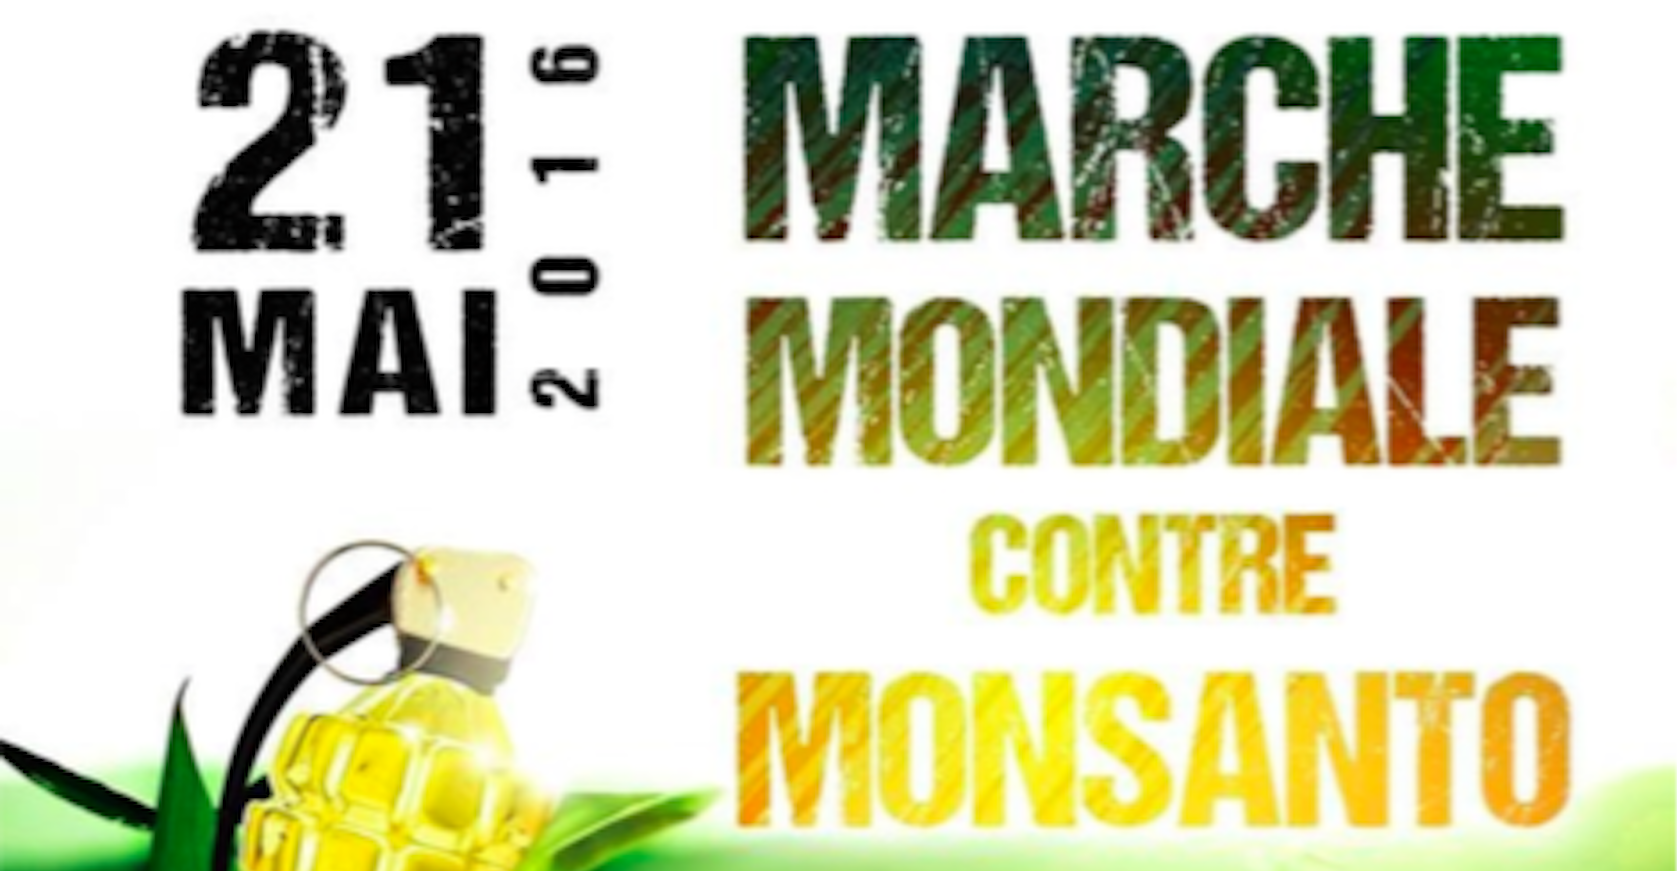 Affiche de la Marche mondiale contre Monsanto (Photo : Les amis de la Confédération Paysanne d'Alsace / doc remis)